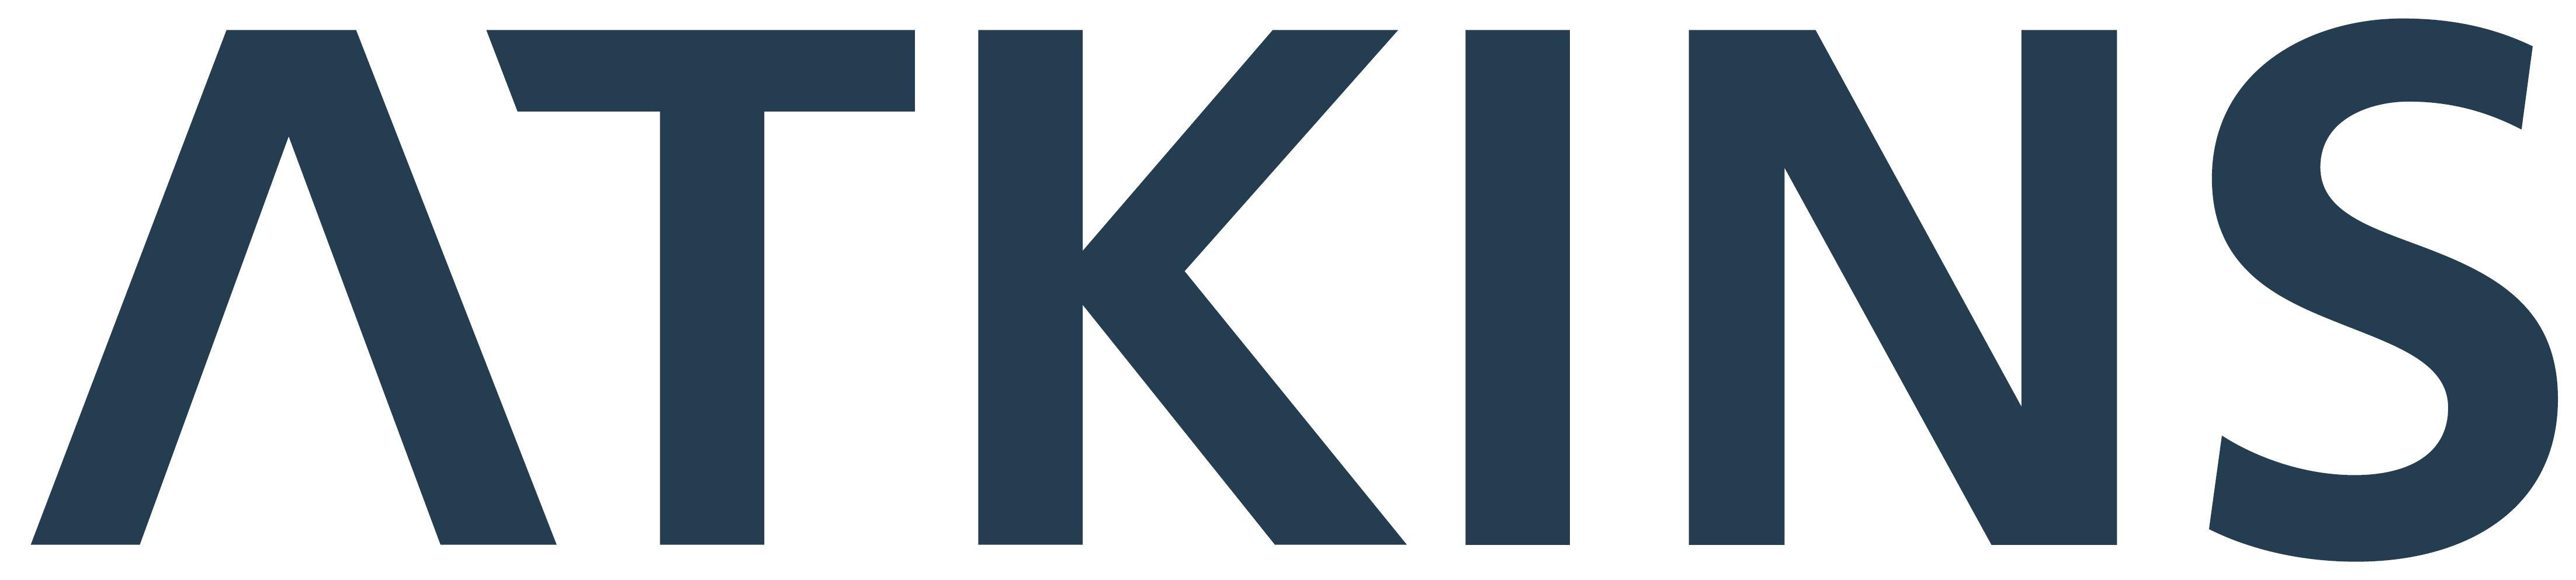 Atkins Logo - LogoDix